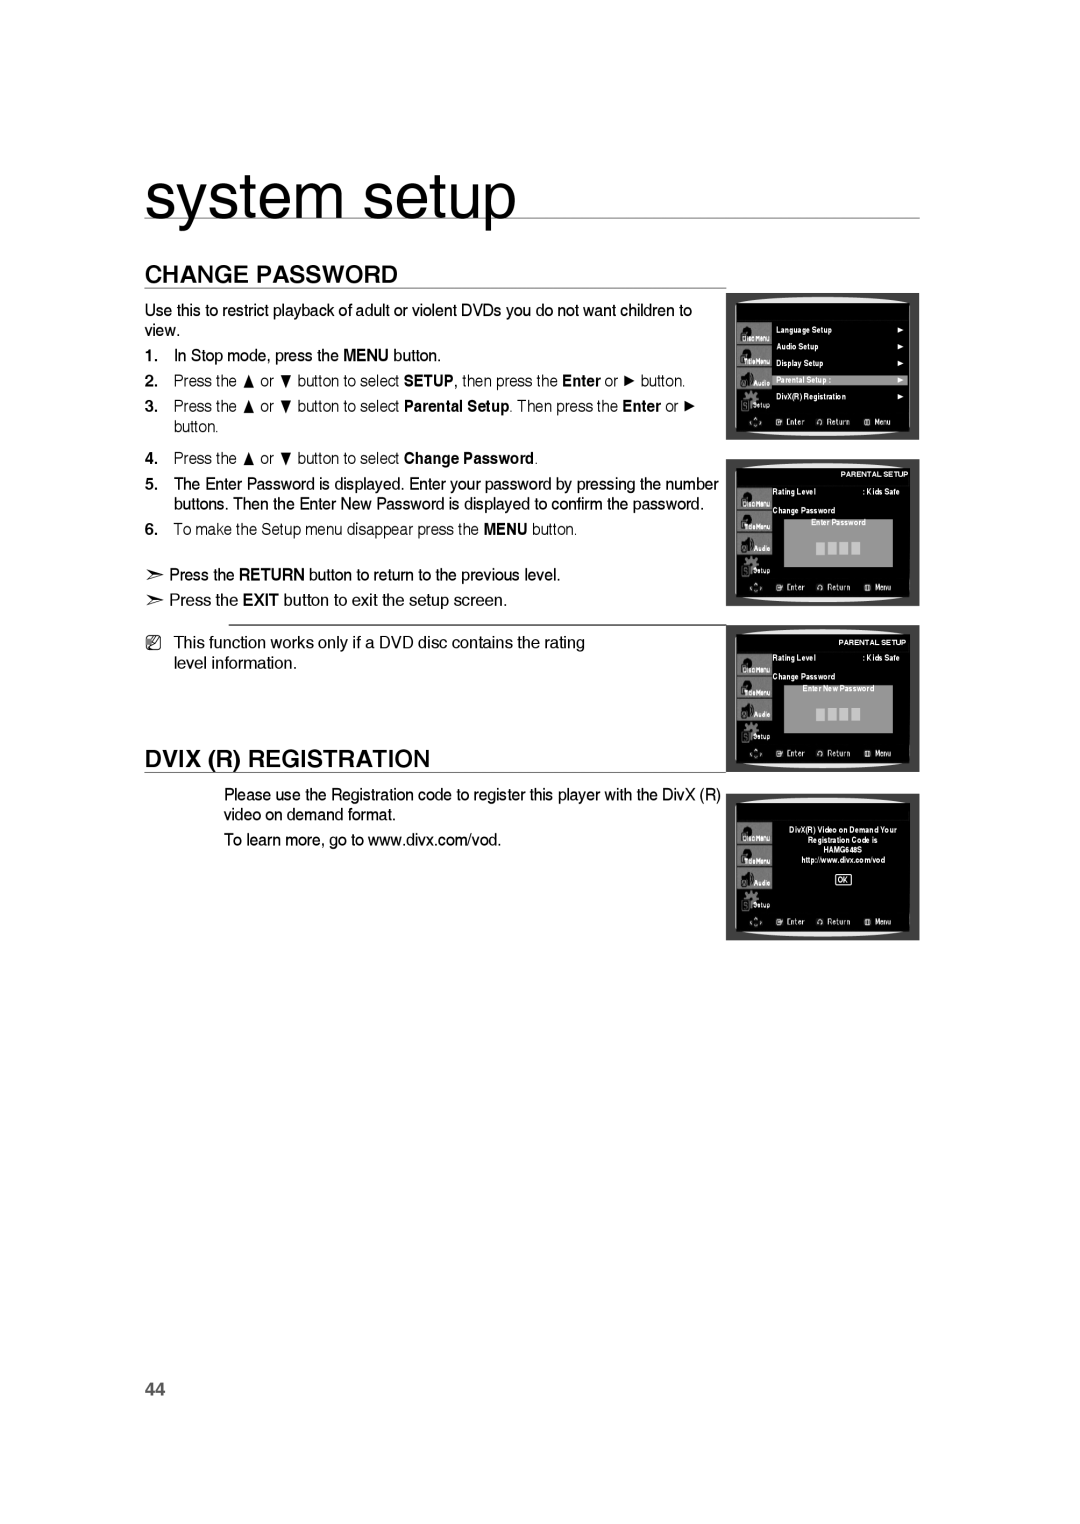 Samsung HE10T user manual Change Password, Dvix R Registration, system setup 